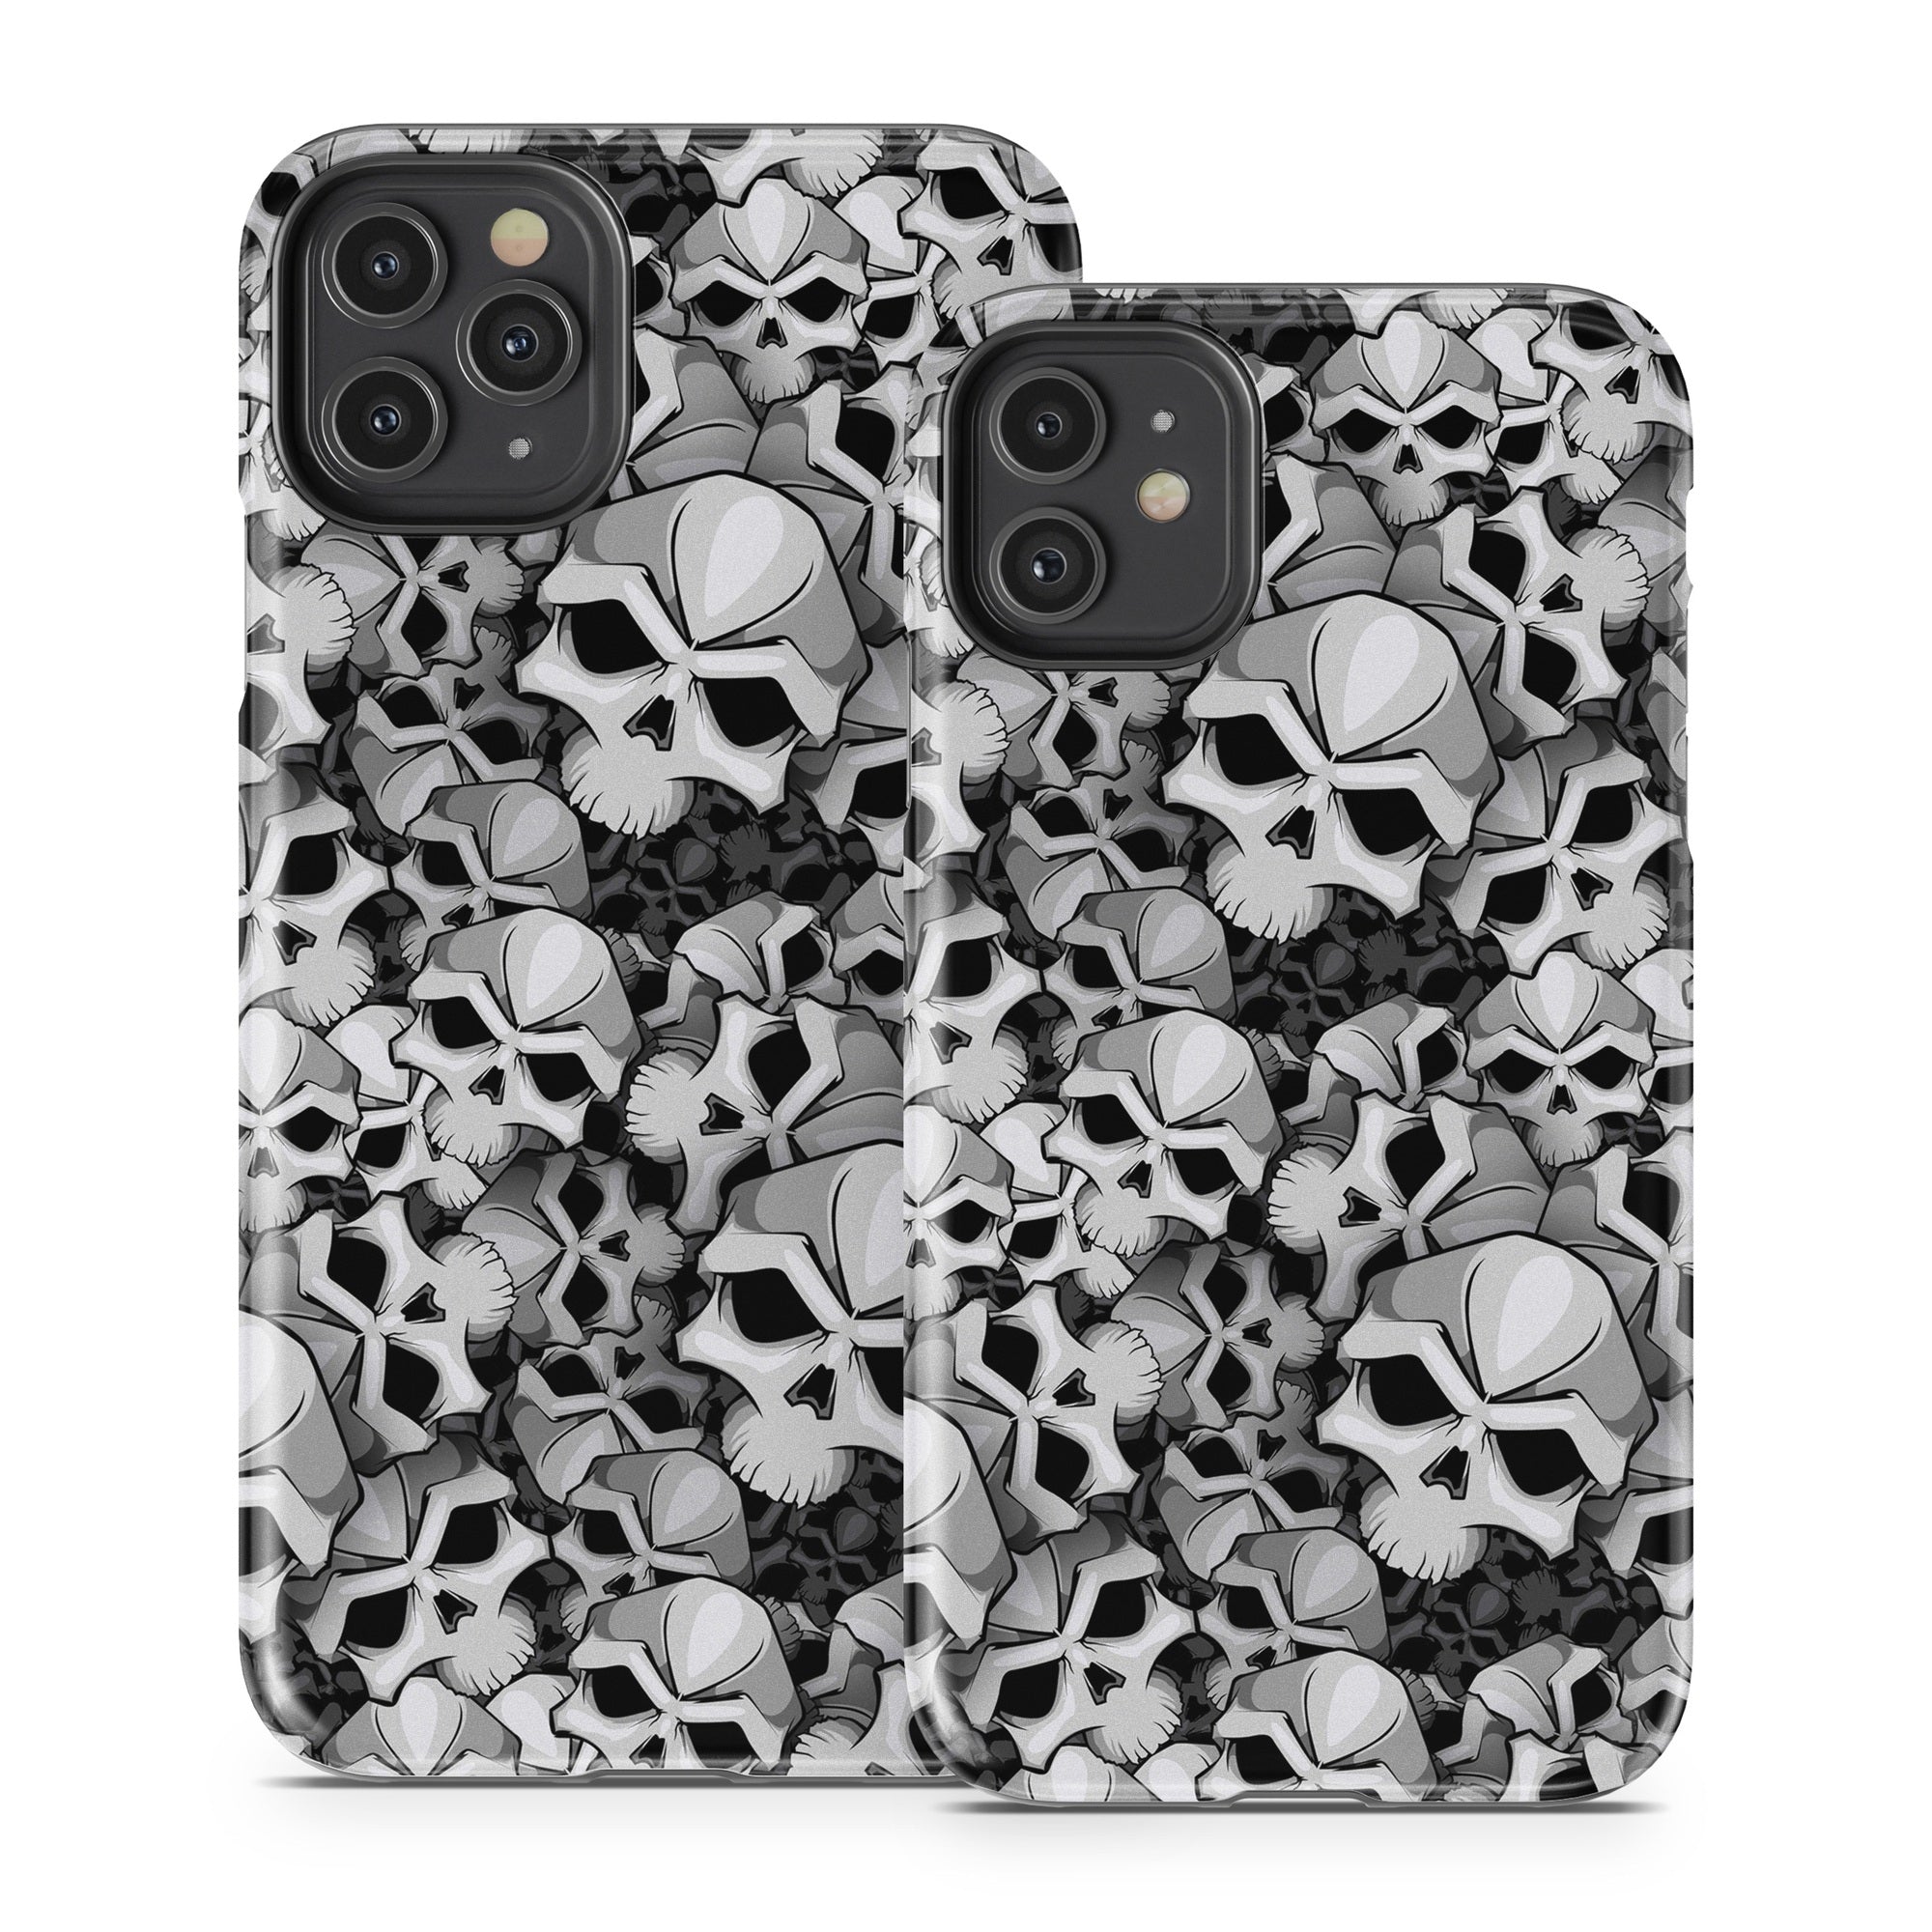 Bones - Apple iPhone 11 Tough Case